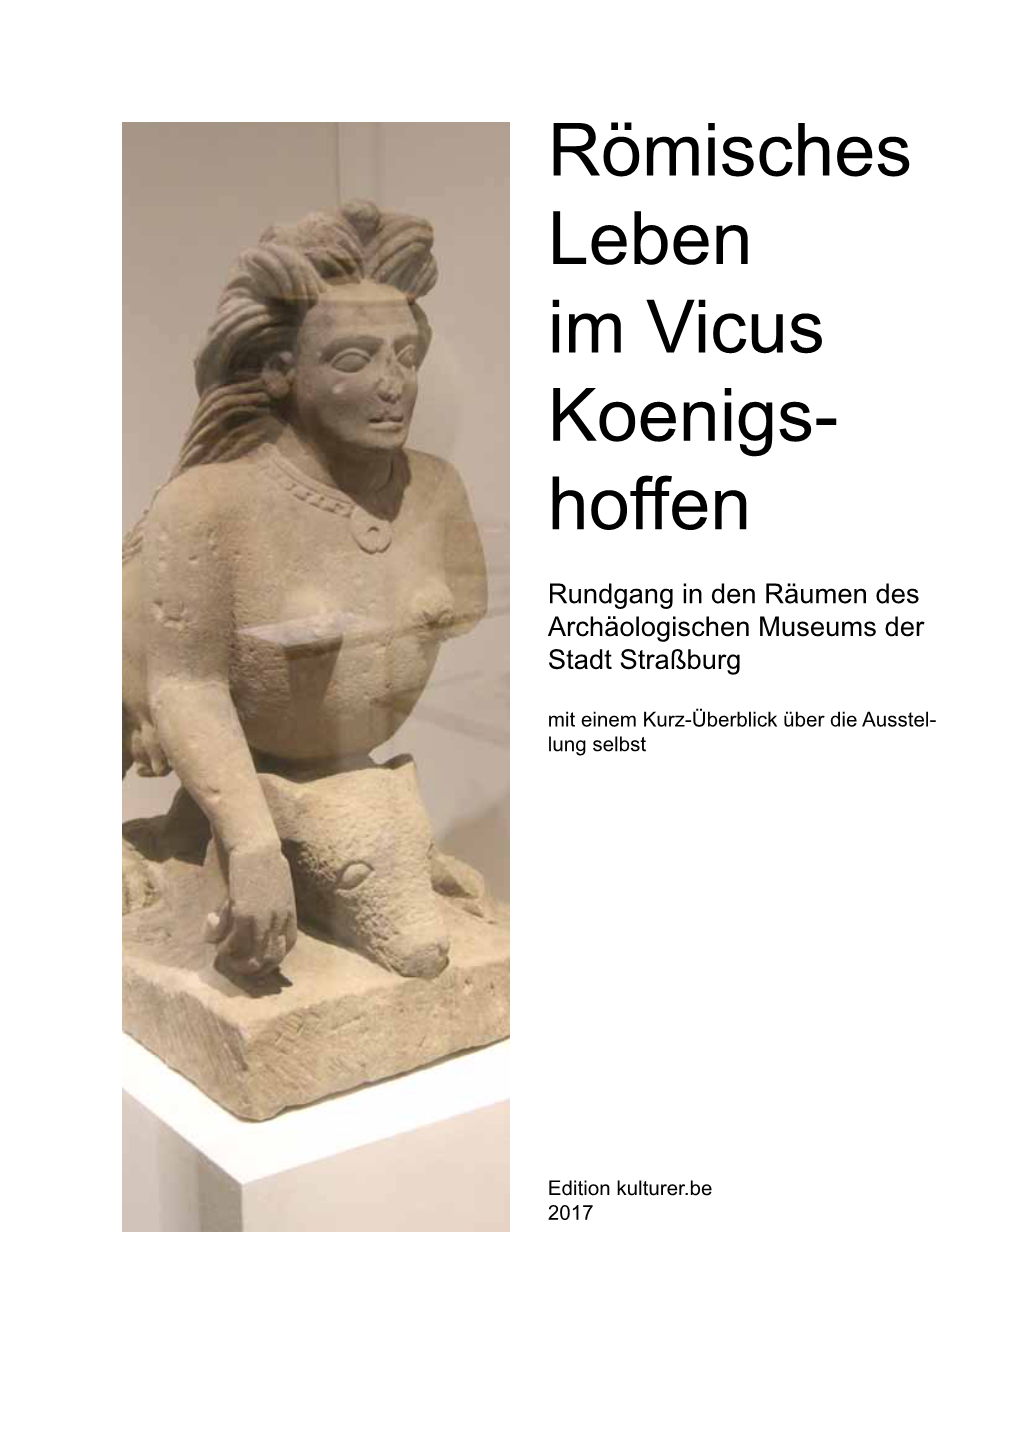 Hoffen - Rundgang in Den Museumsräumen Römisches Leben Im Vicus Koenigs- Hoffen